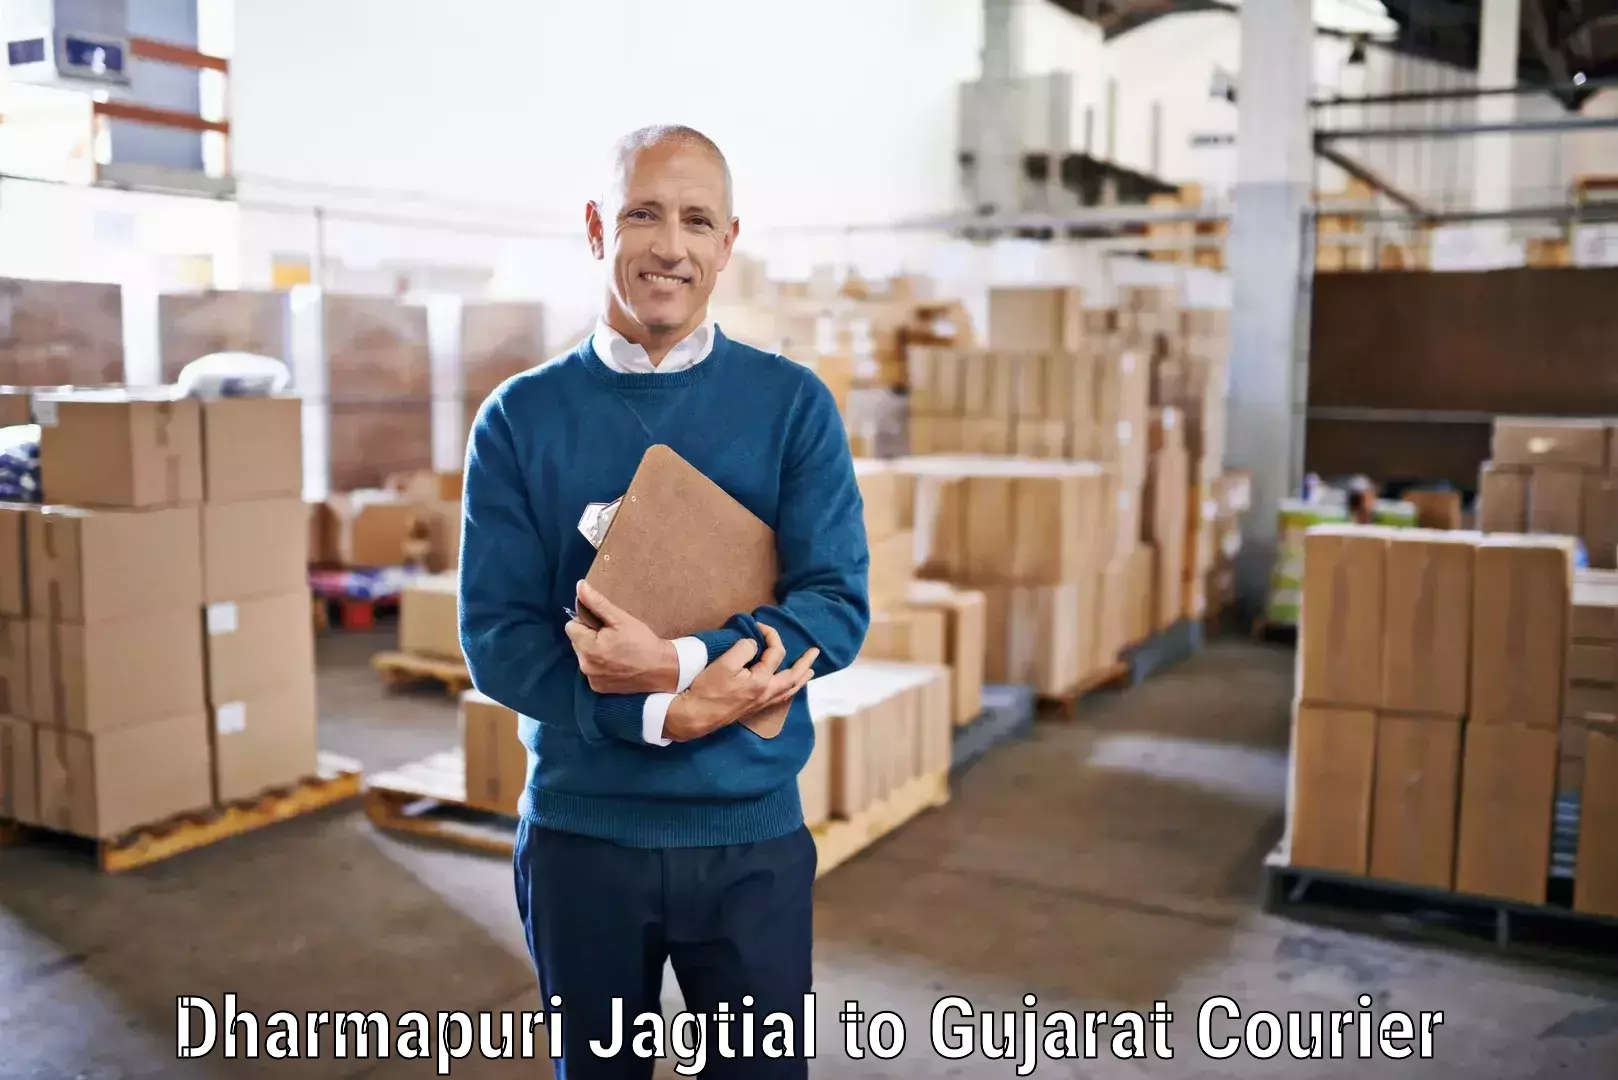 Weekend courier service Dharmapuri Jagtial to Prantij